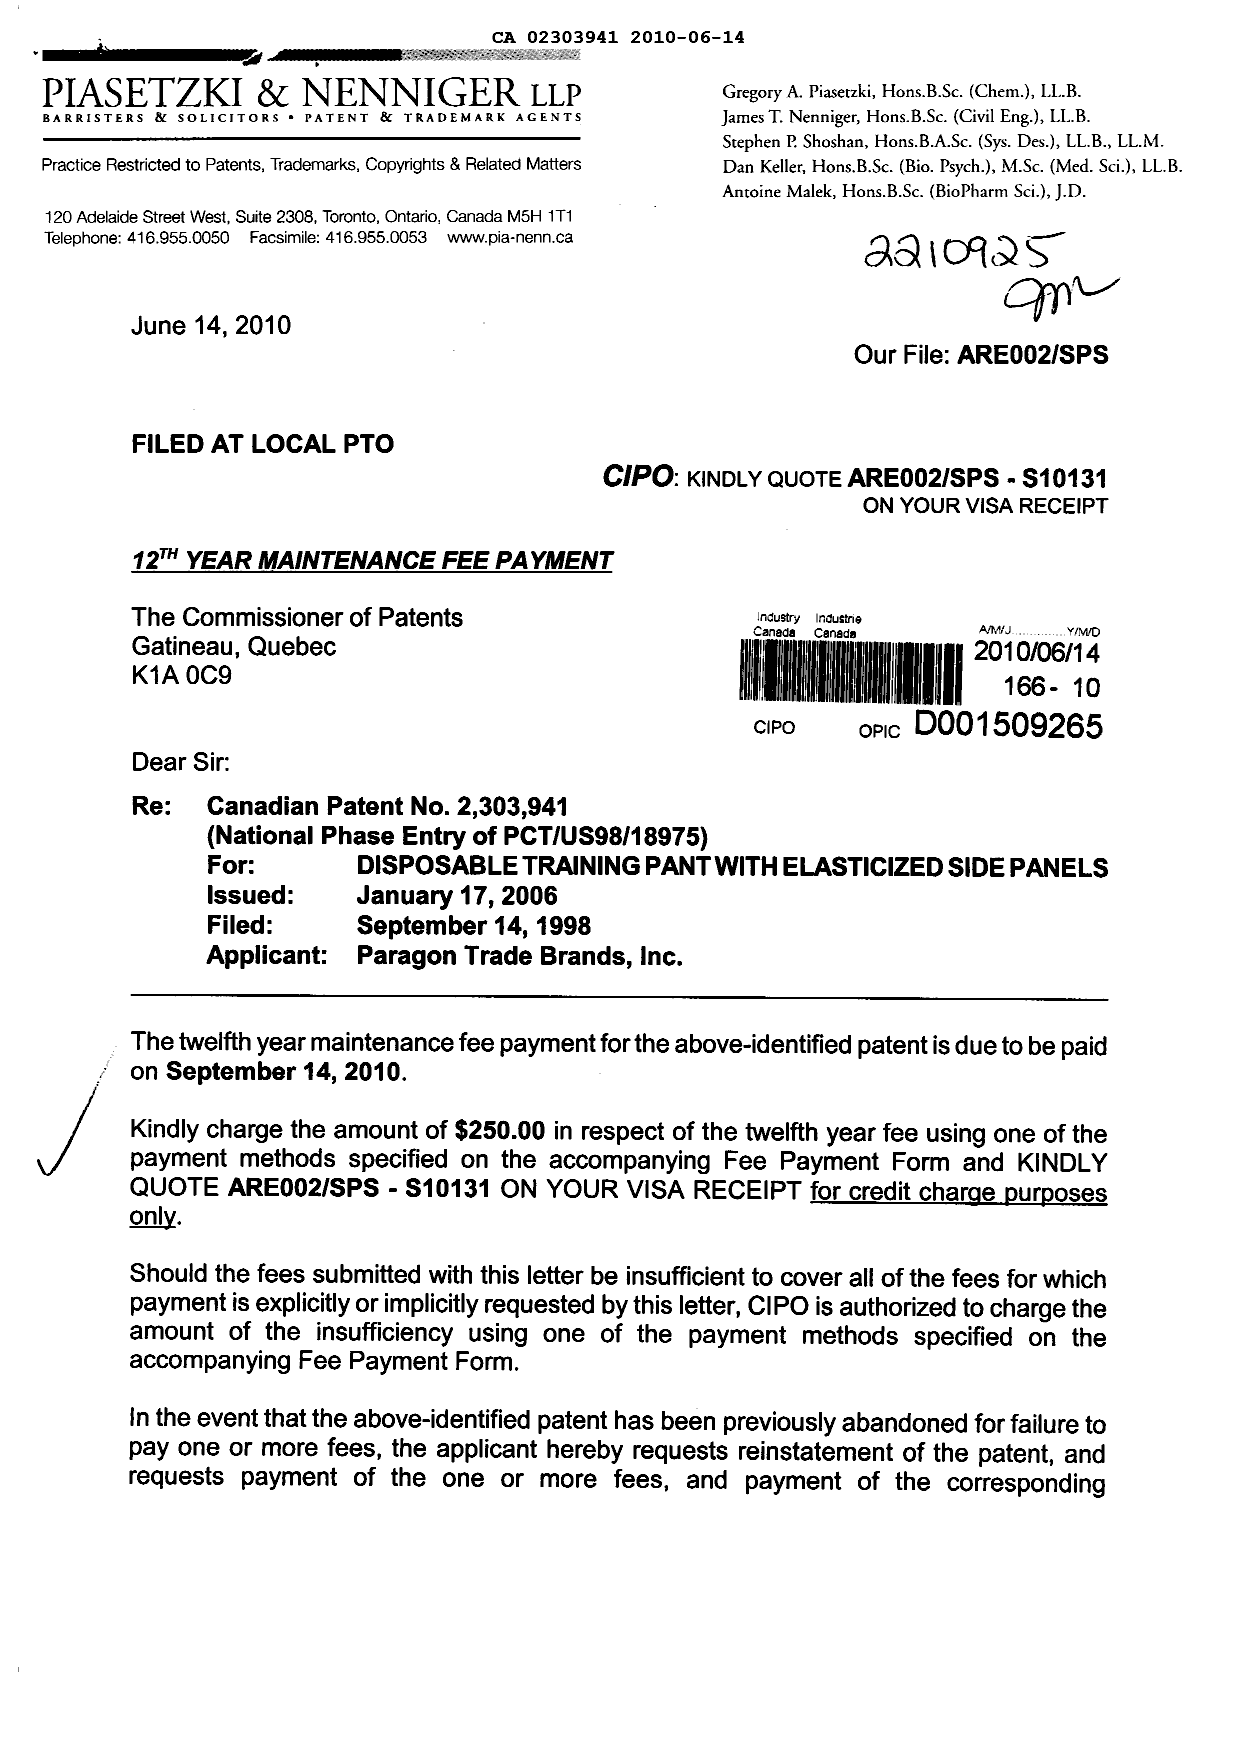 Document de brevet canadien 2303941. Taxes 20100614. Image 1 de 2